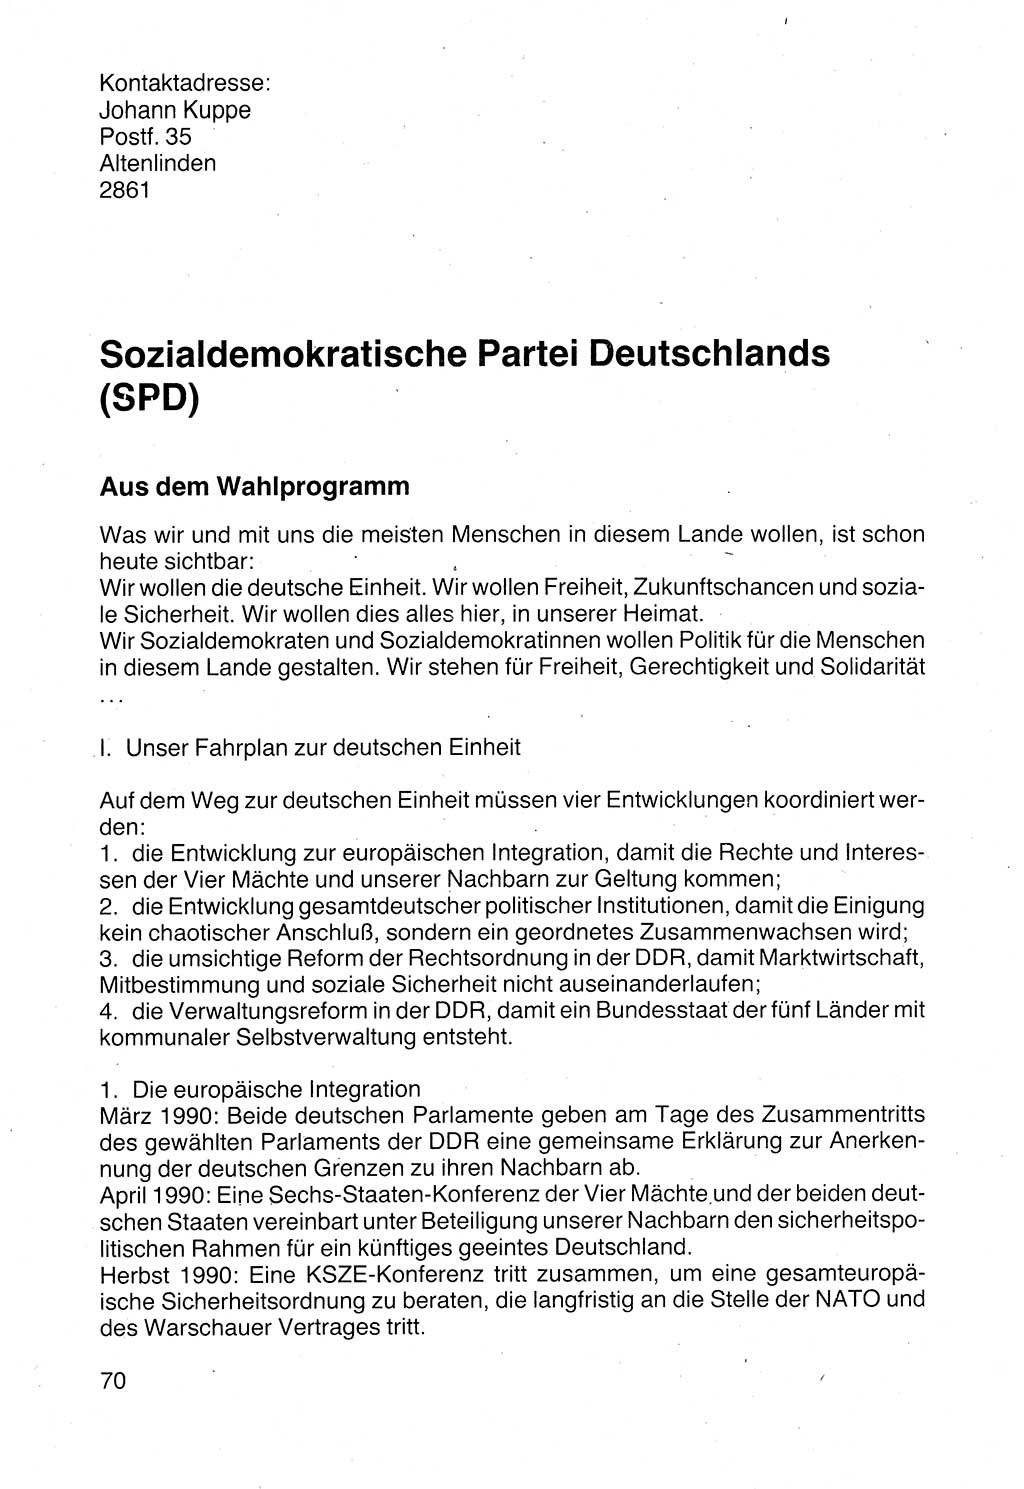 Politische Parteien und Bewegungen der DDR (Deutsche Demokratische Republik) über sich selbst 1990, Seite 70 (Pol. Part. Bew. DDR 1990, S. 70)